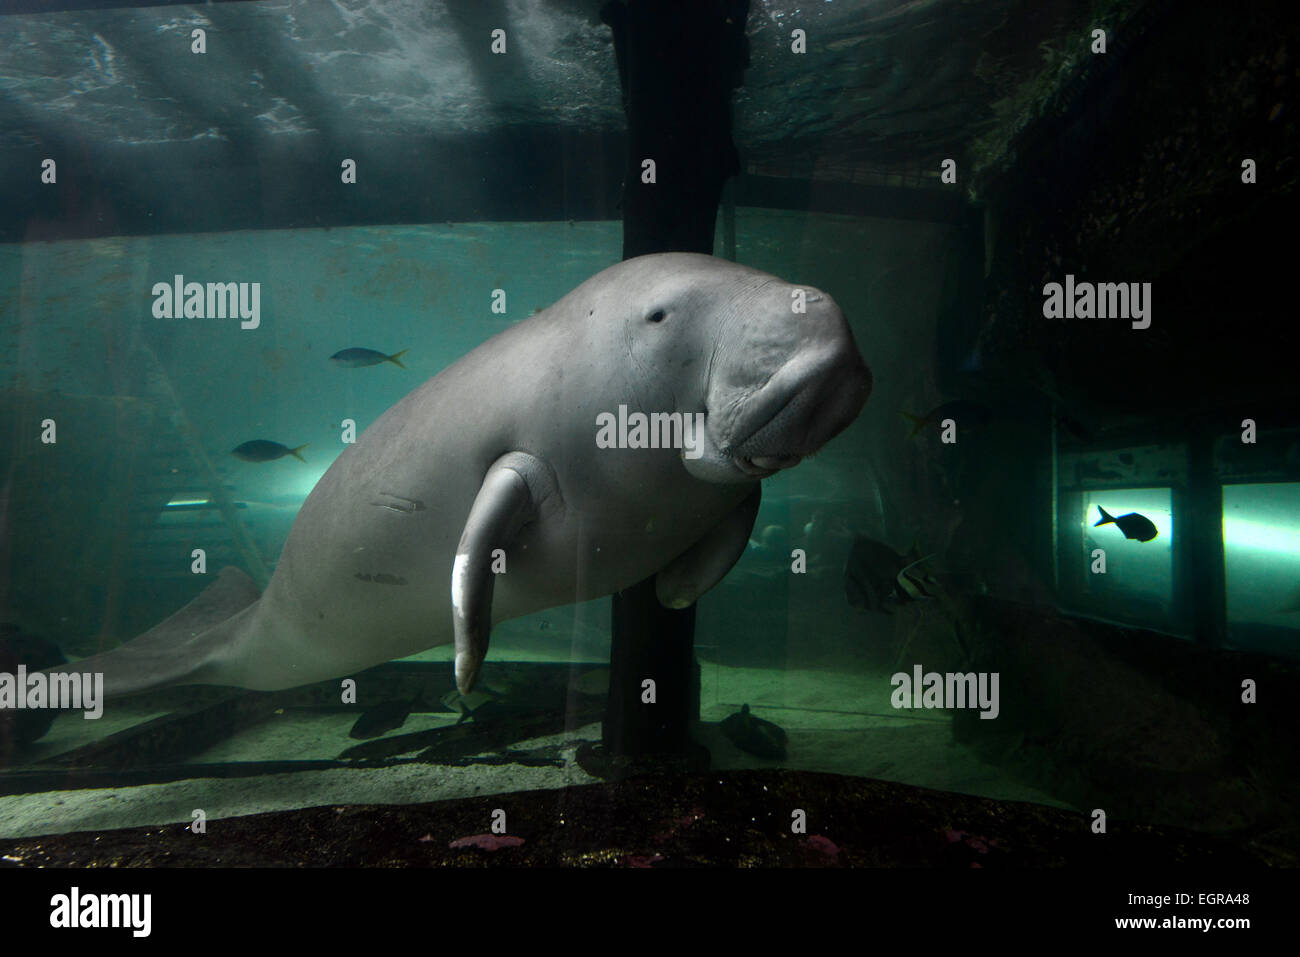 Photos montre un dugong (vache de mer), l'un des deux seuls en captivité, les deux sont dans le Sydney Aquarium Sealife, Australie. Banque D'Images